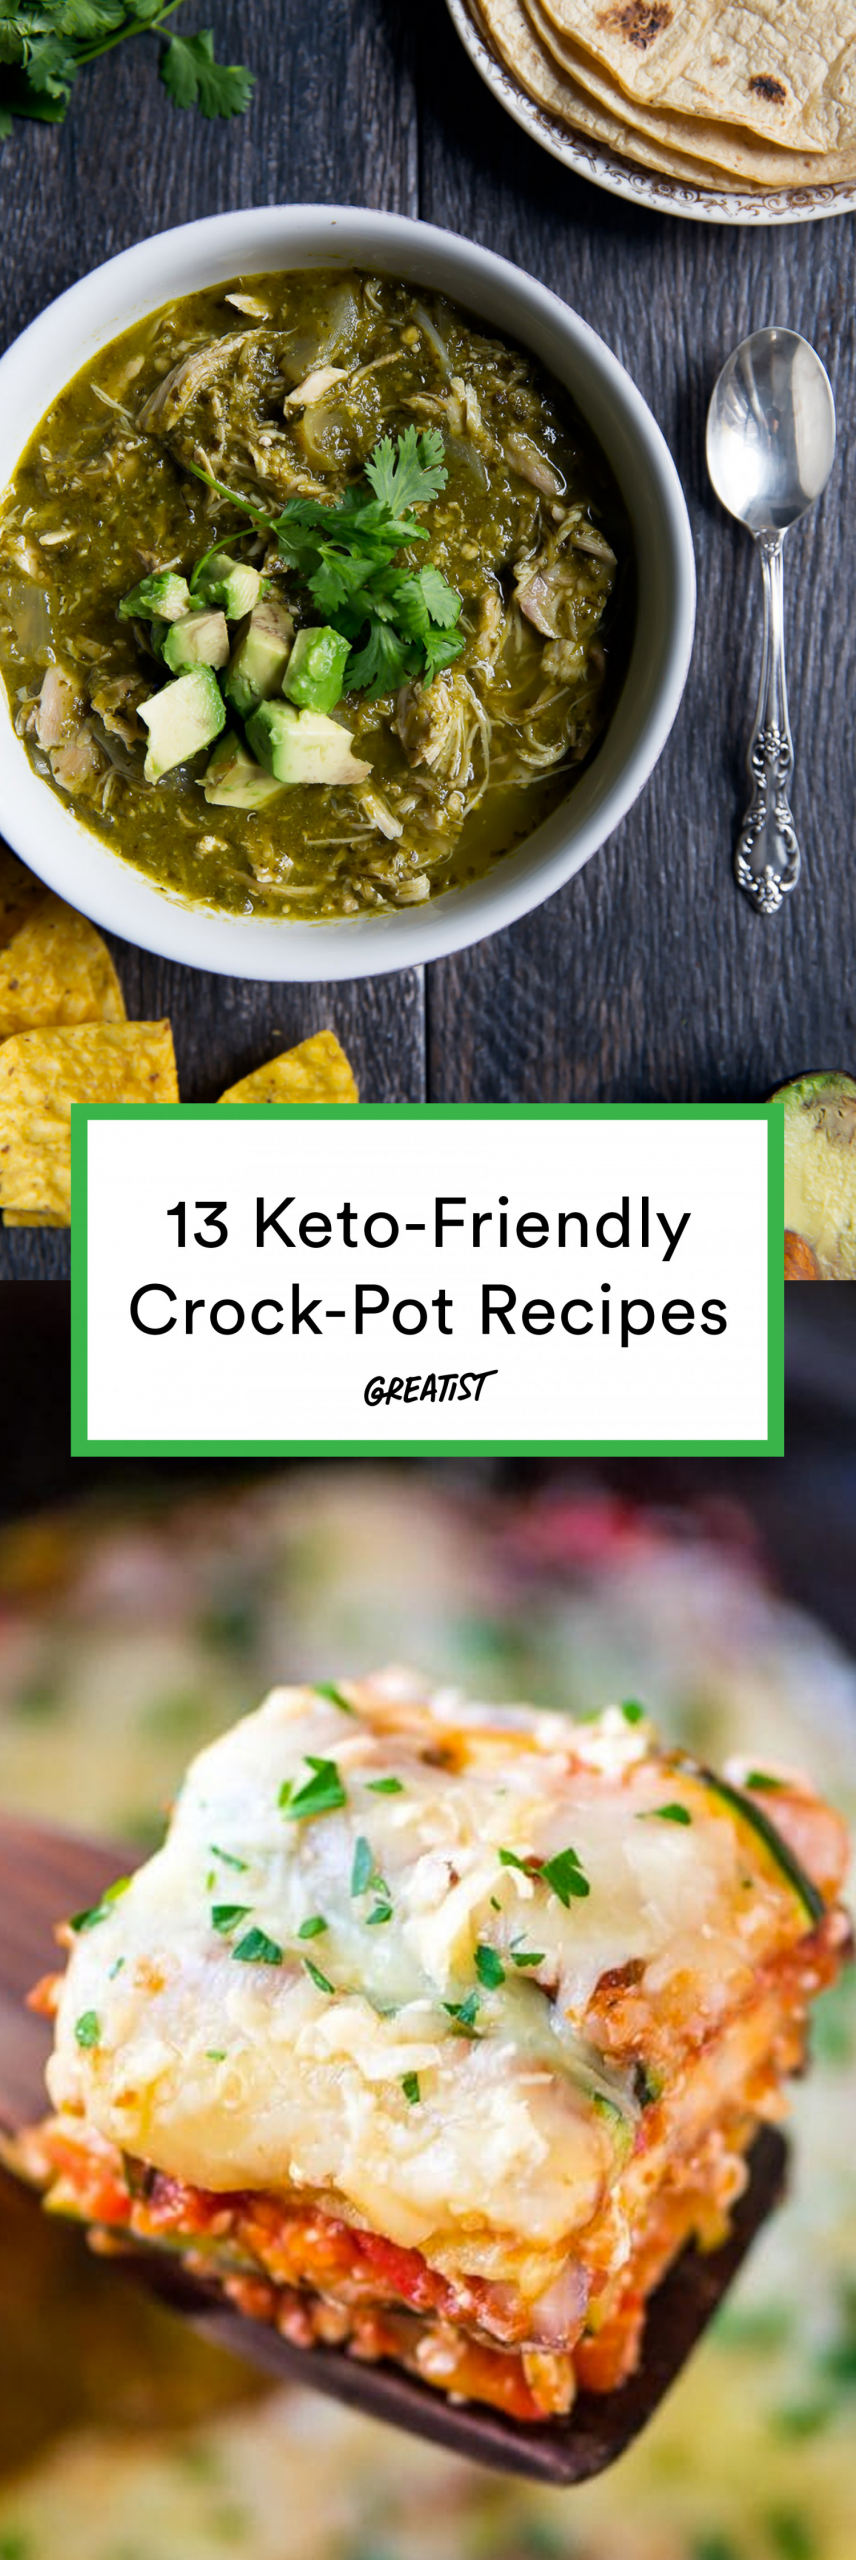 Healthy Keto Dinner Recipes Crock Pot
 13 Keto Crock Pot Recipes for Easy Low Carb Meals